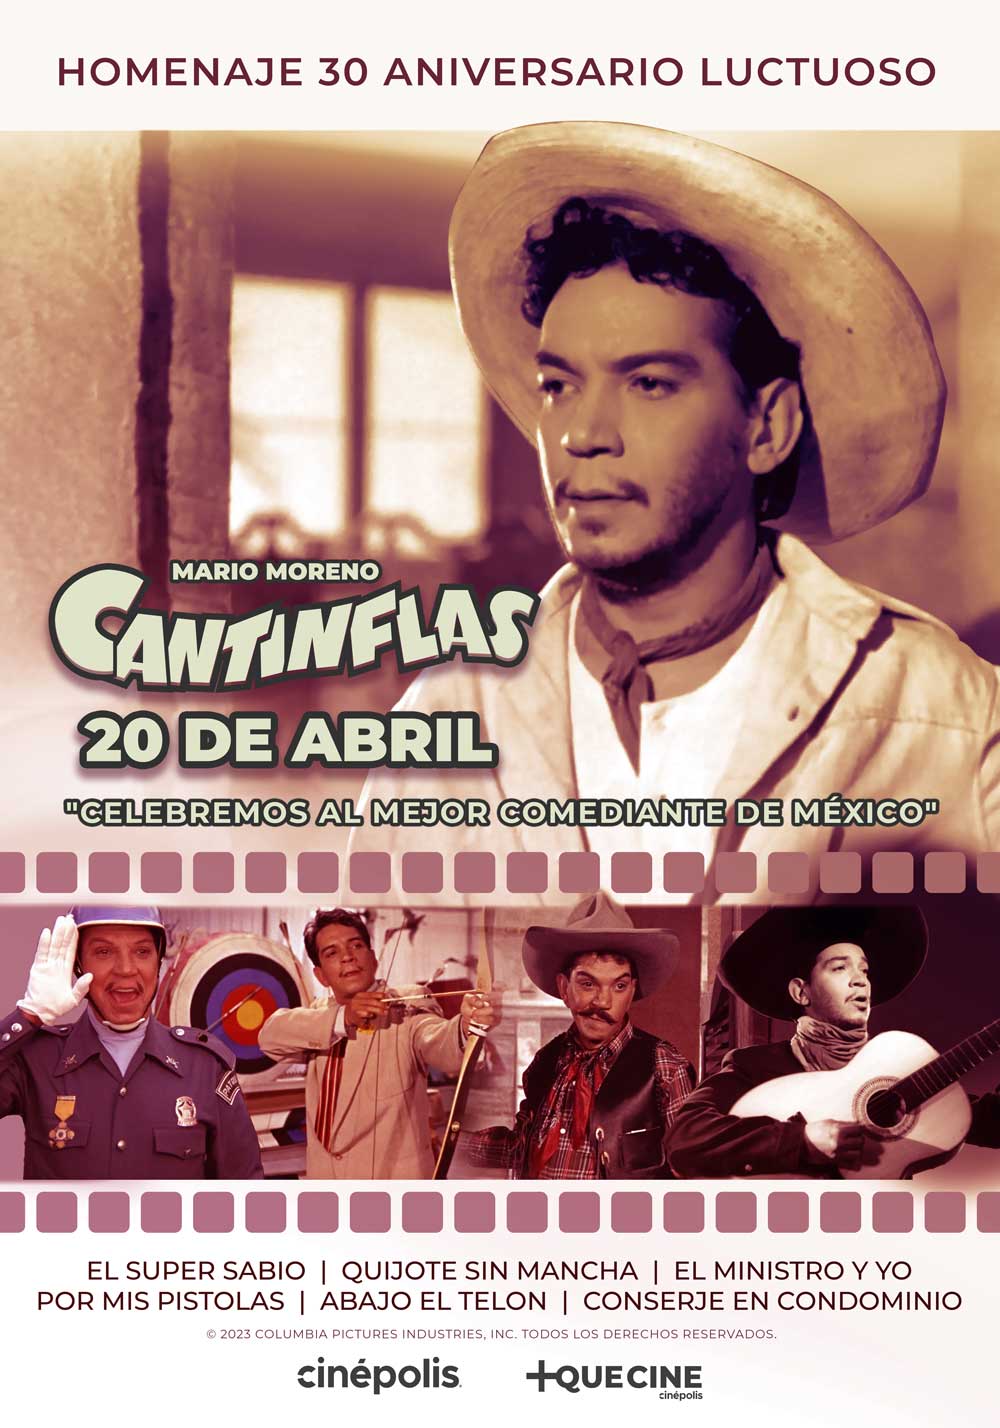 Cinépolis brinda un Homenaje a Mario Moreno "Cantinflas" 10